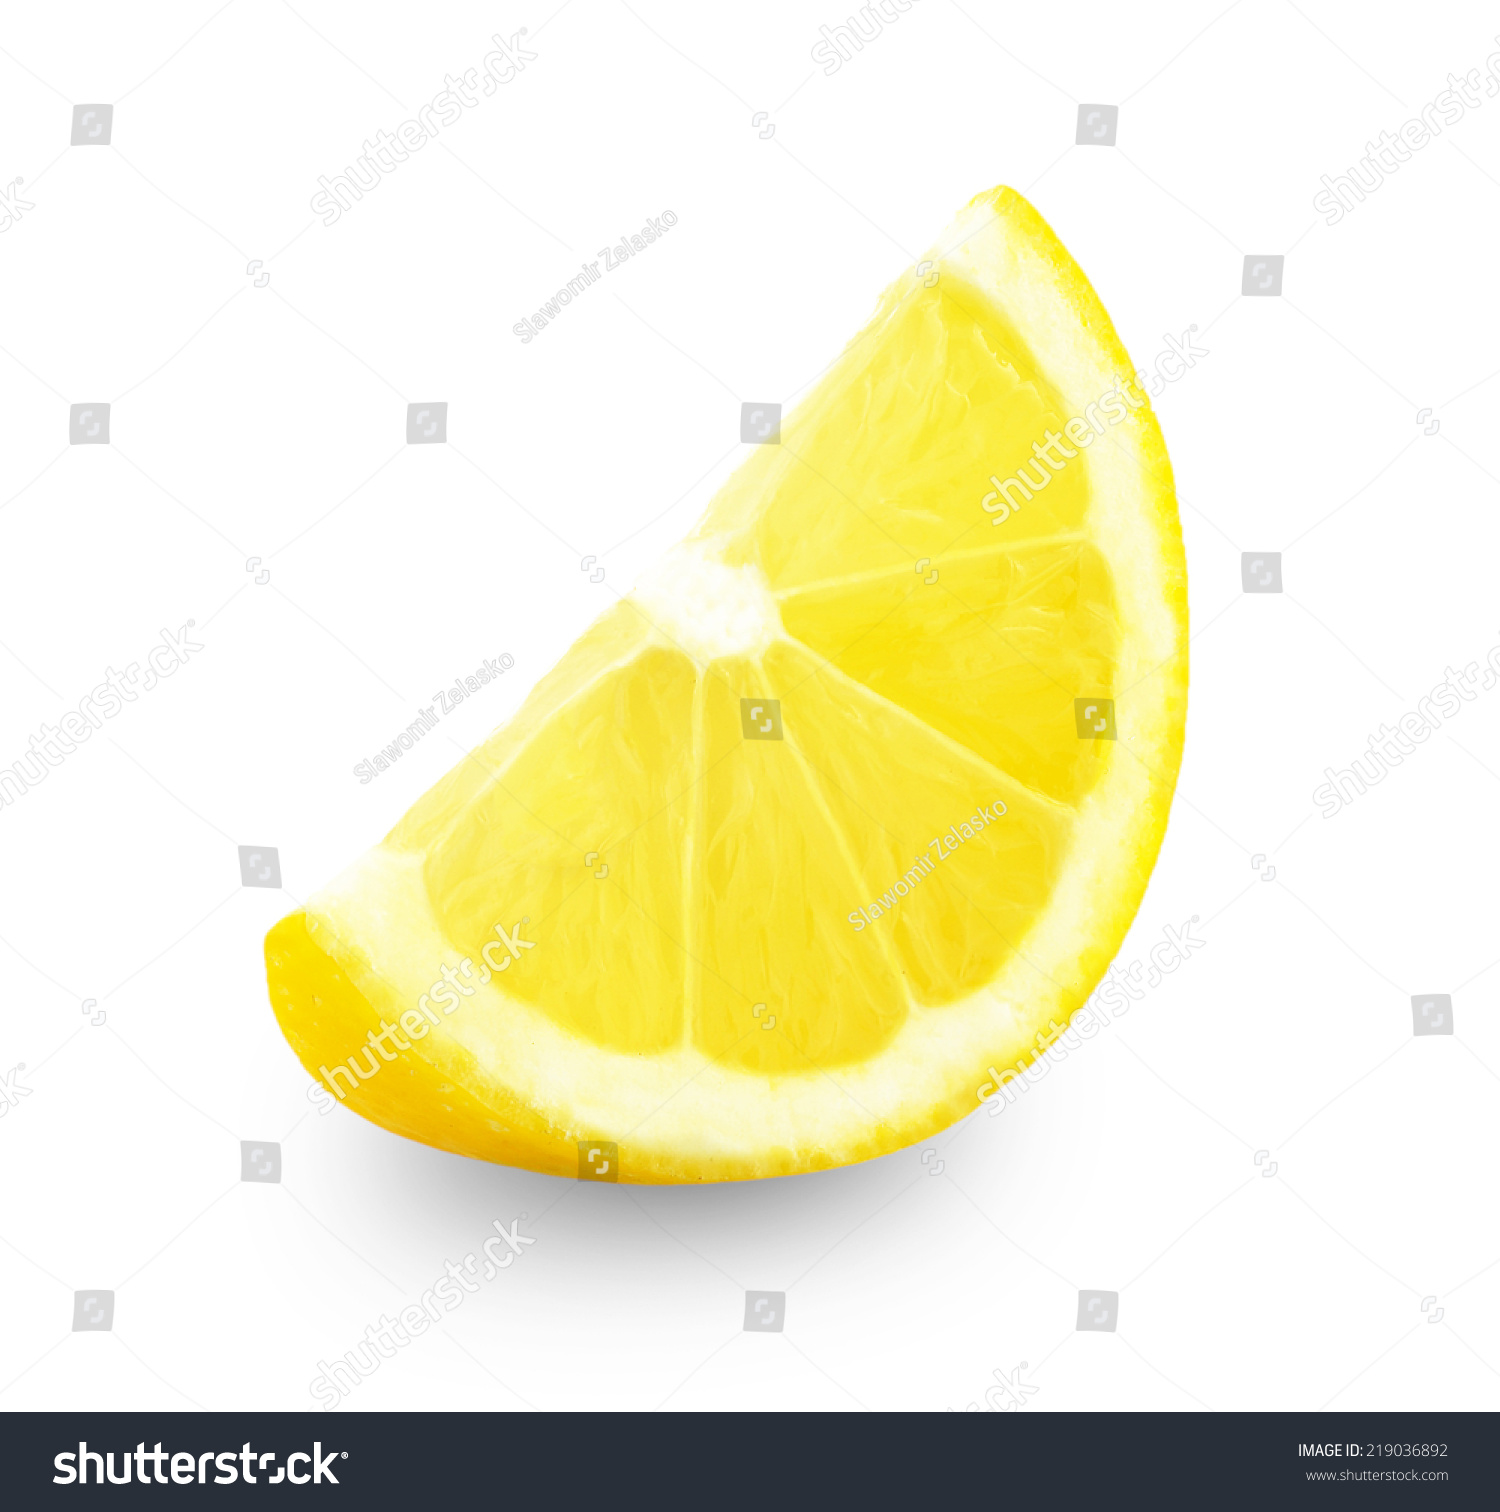 Lemon Slice Stock Photo 219036892 : Shutterstock